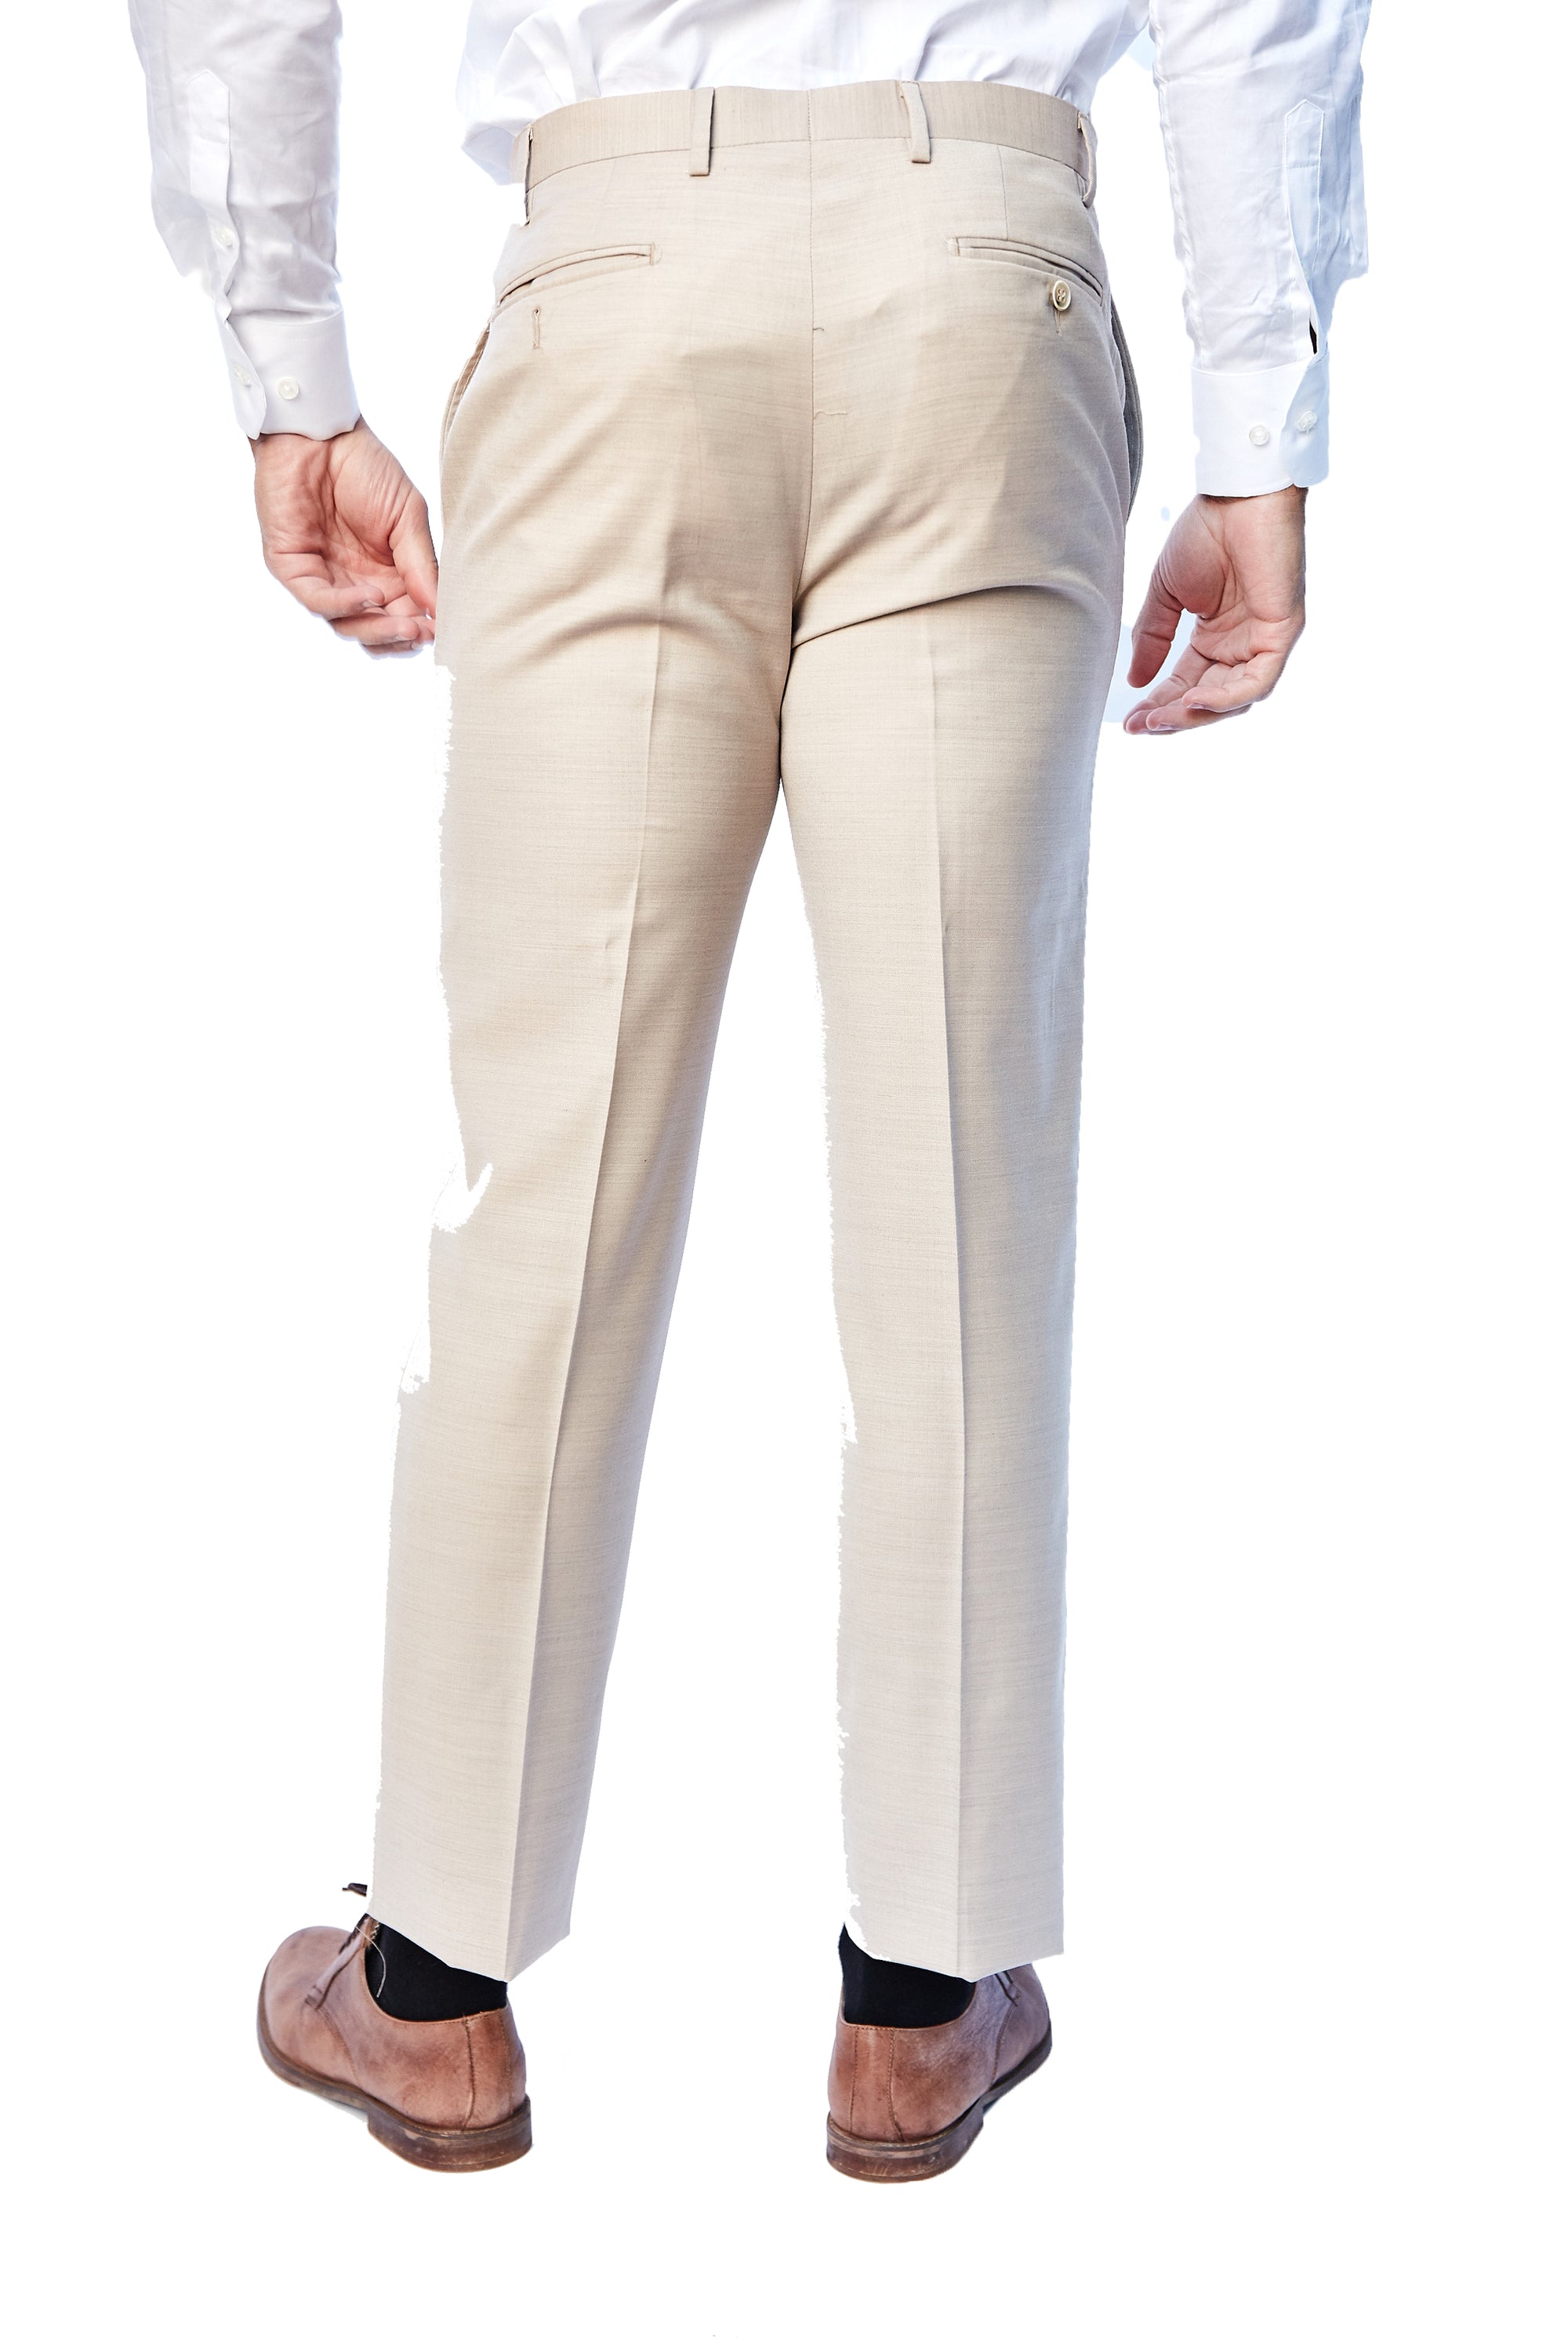 Beige Pants - The Suit Spot